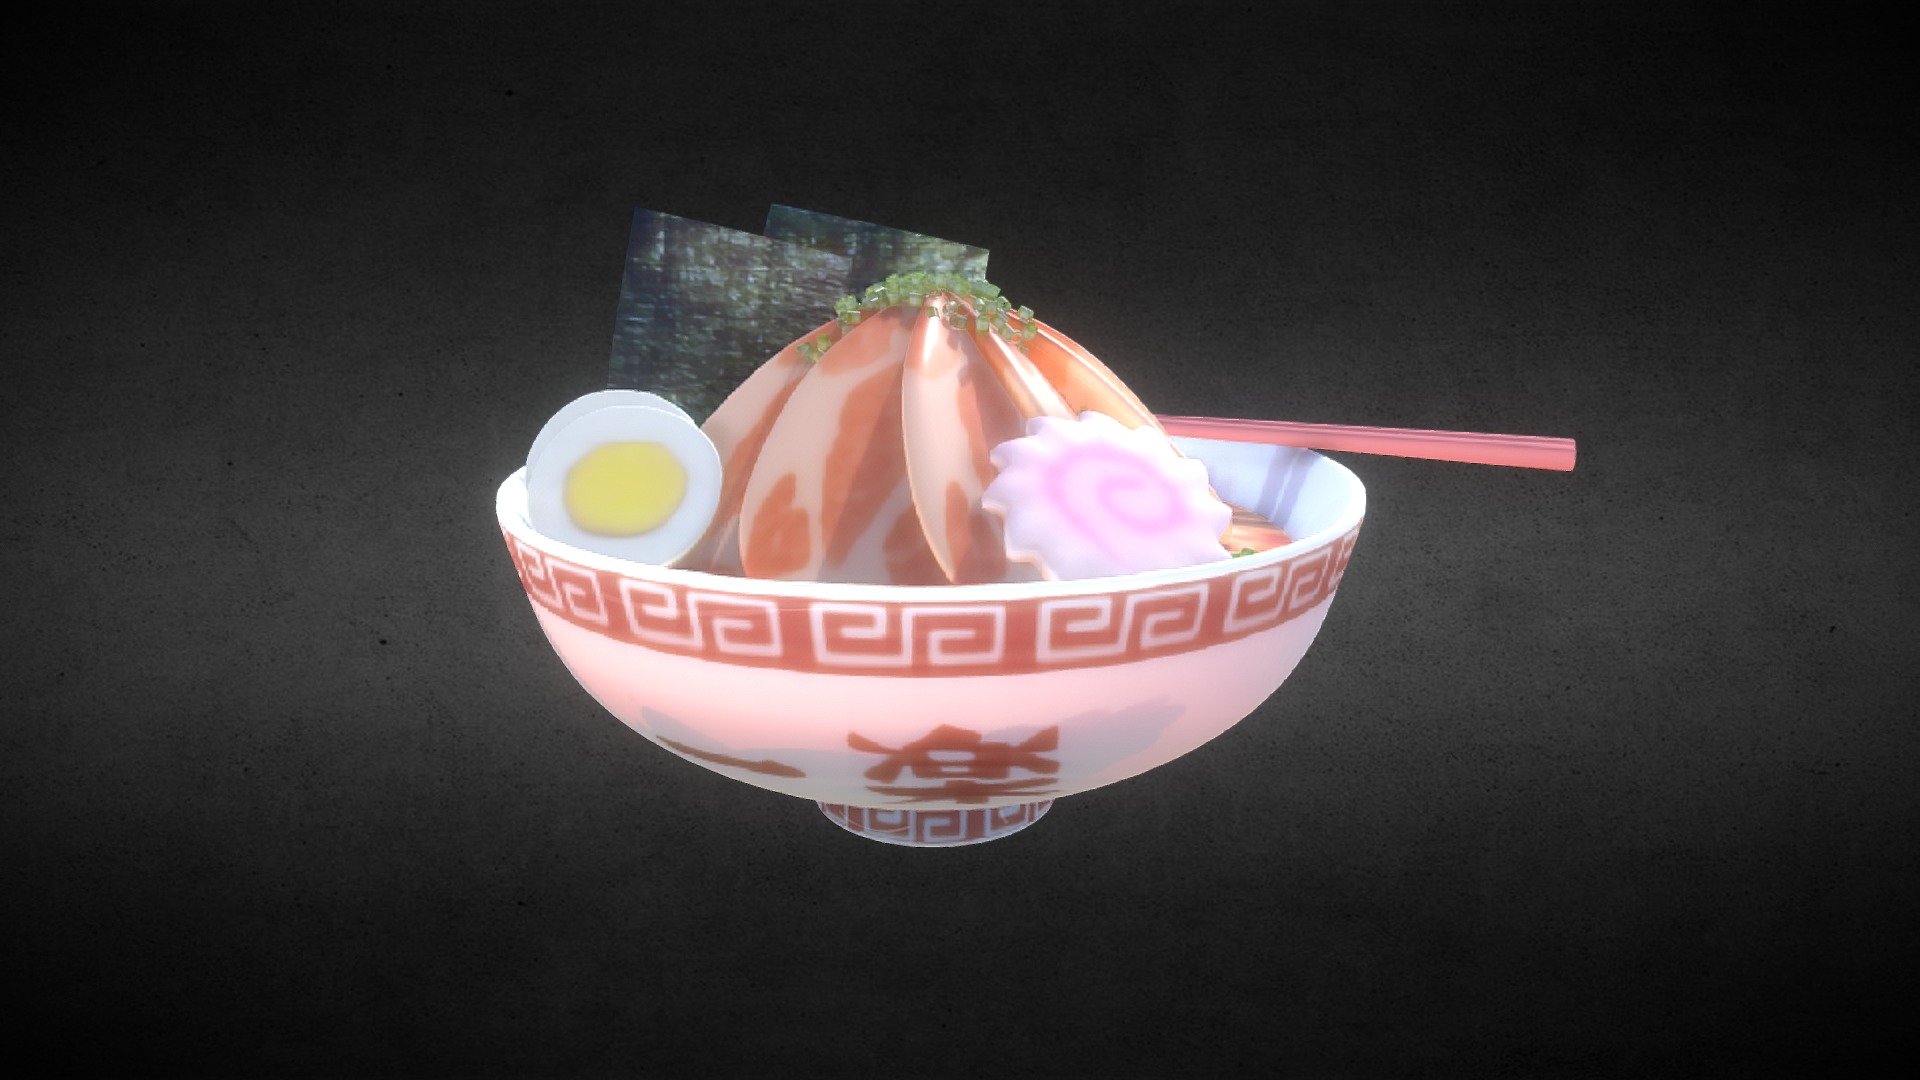 Naruto_Yile_Ramen_Noodles! - Naruto_Yile_Ramen_Noodles - 3D model by 啾啾學三滴 JoJo_3D_Class (@JoJo_3D_Class) 3d model